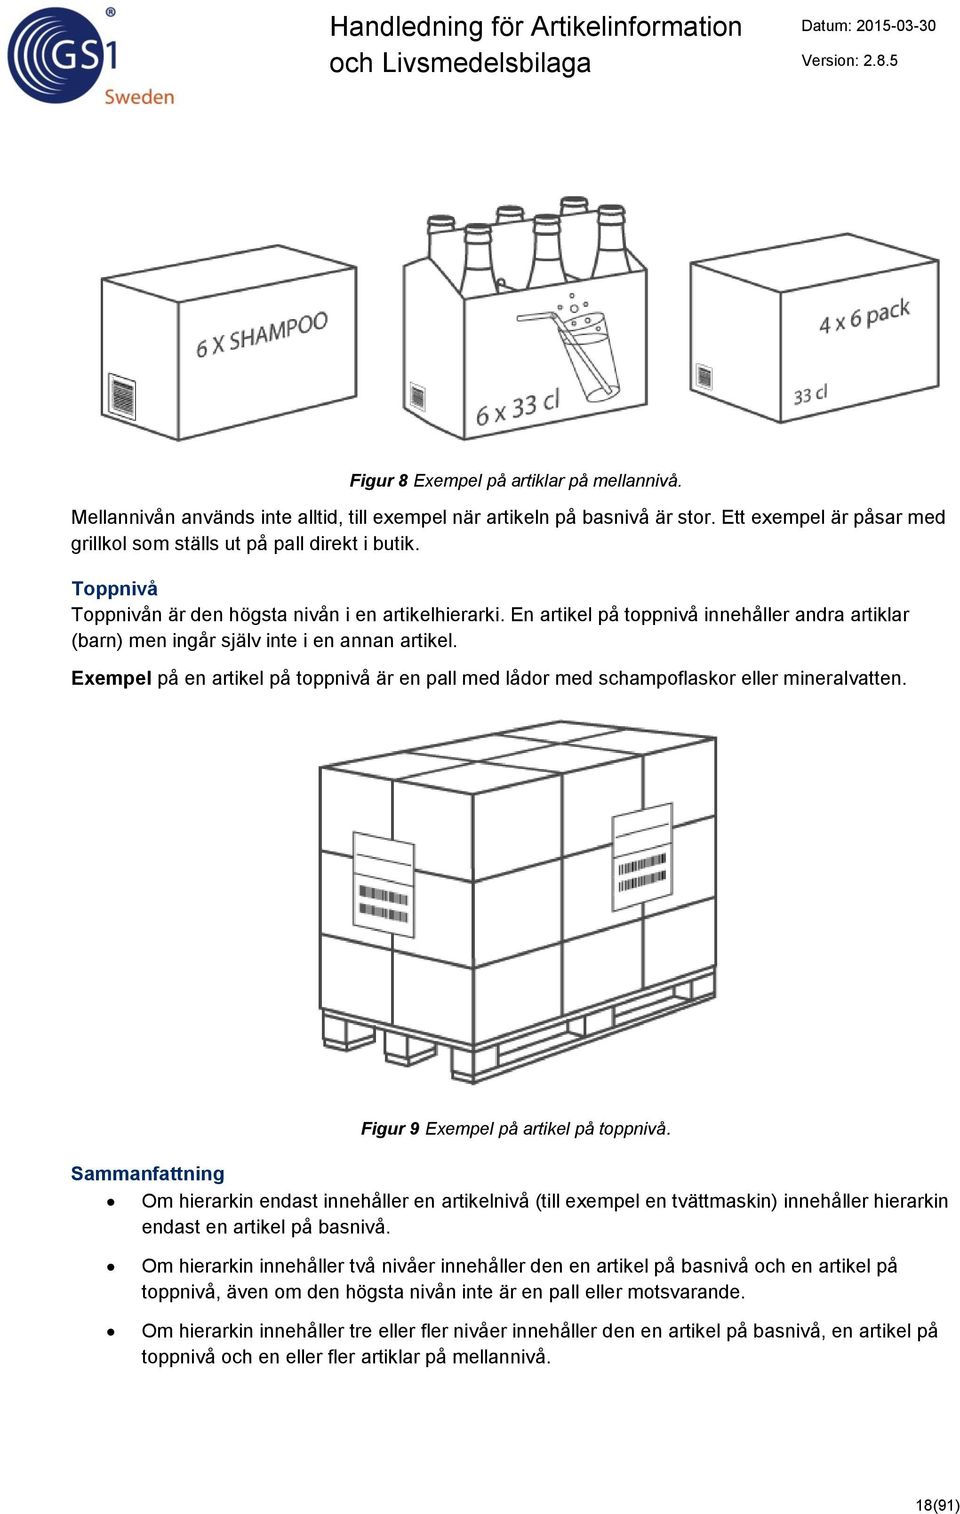 Exempel på en artikel på toppnivå är en pall med lådor med schampoflaskor eller mineralvatten. Figur 9 Exempel på artikel på toppnivå.